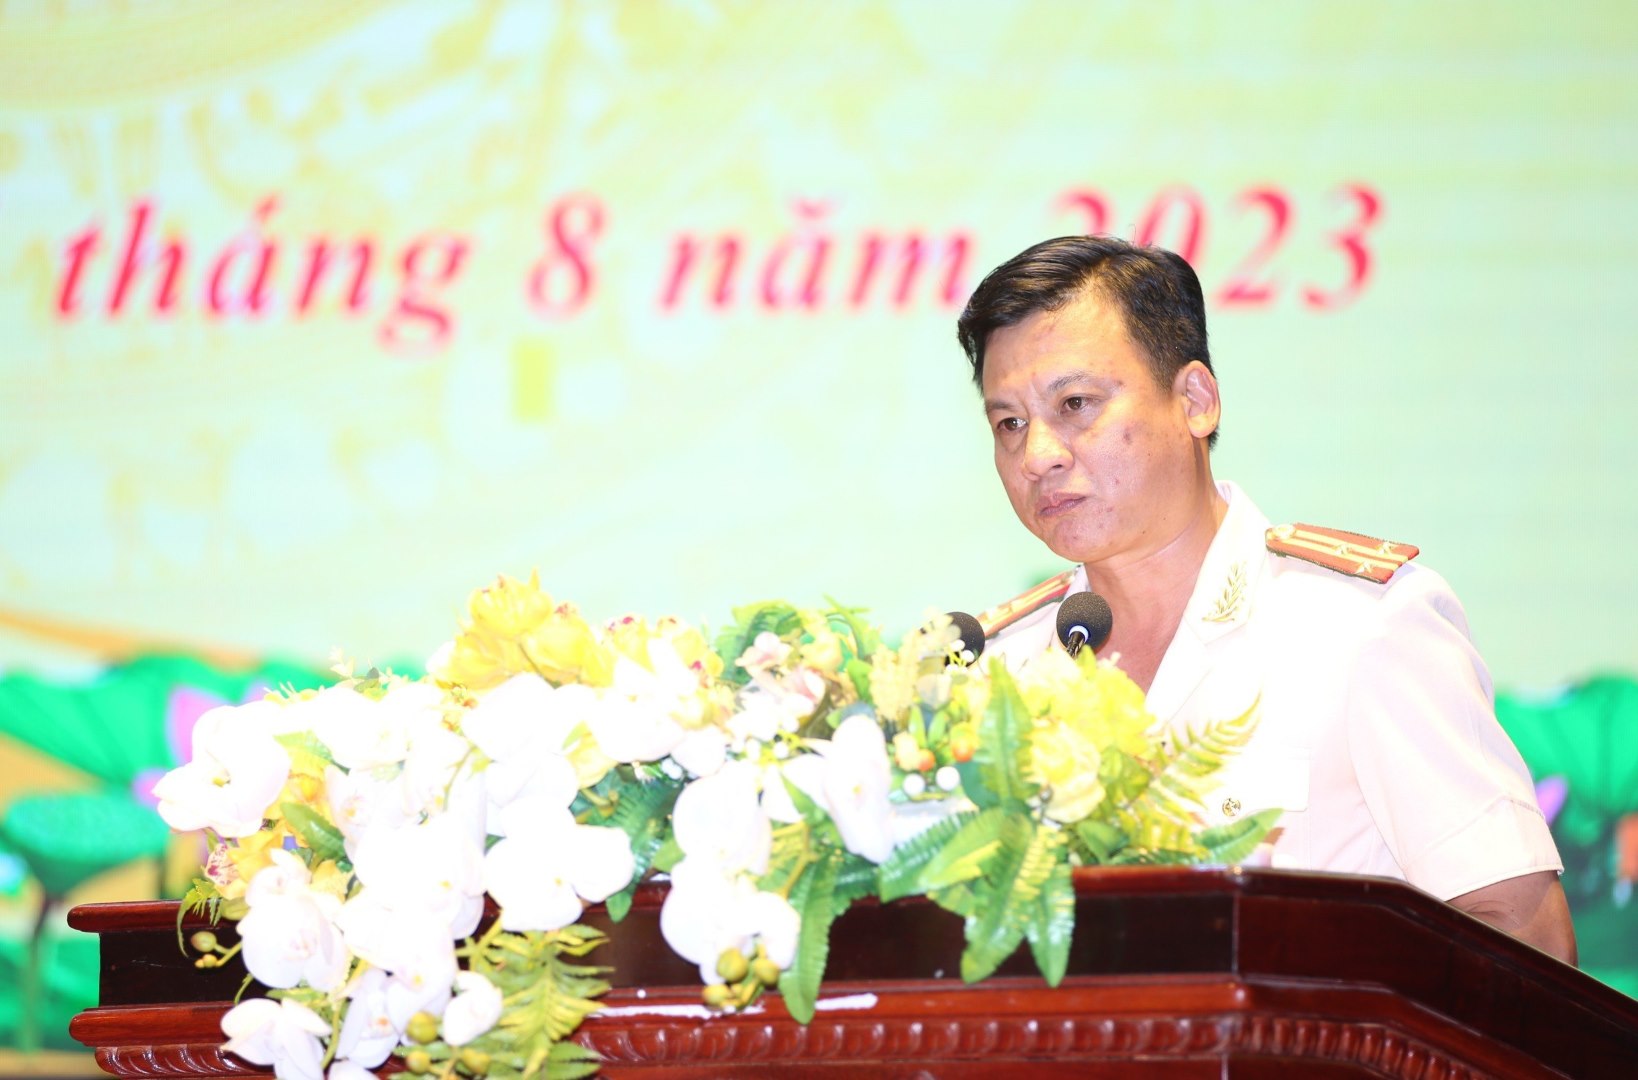 Đồng chí Thượng tá Phạm Vũ Cường - Trưởng phòng Tham mưu phát biểu nhận nhiệm vụ mới